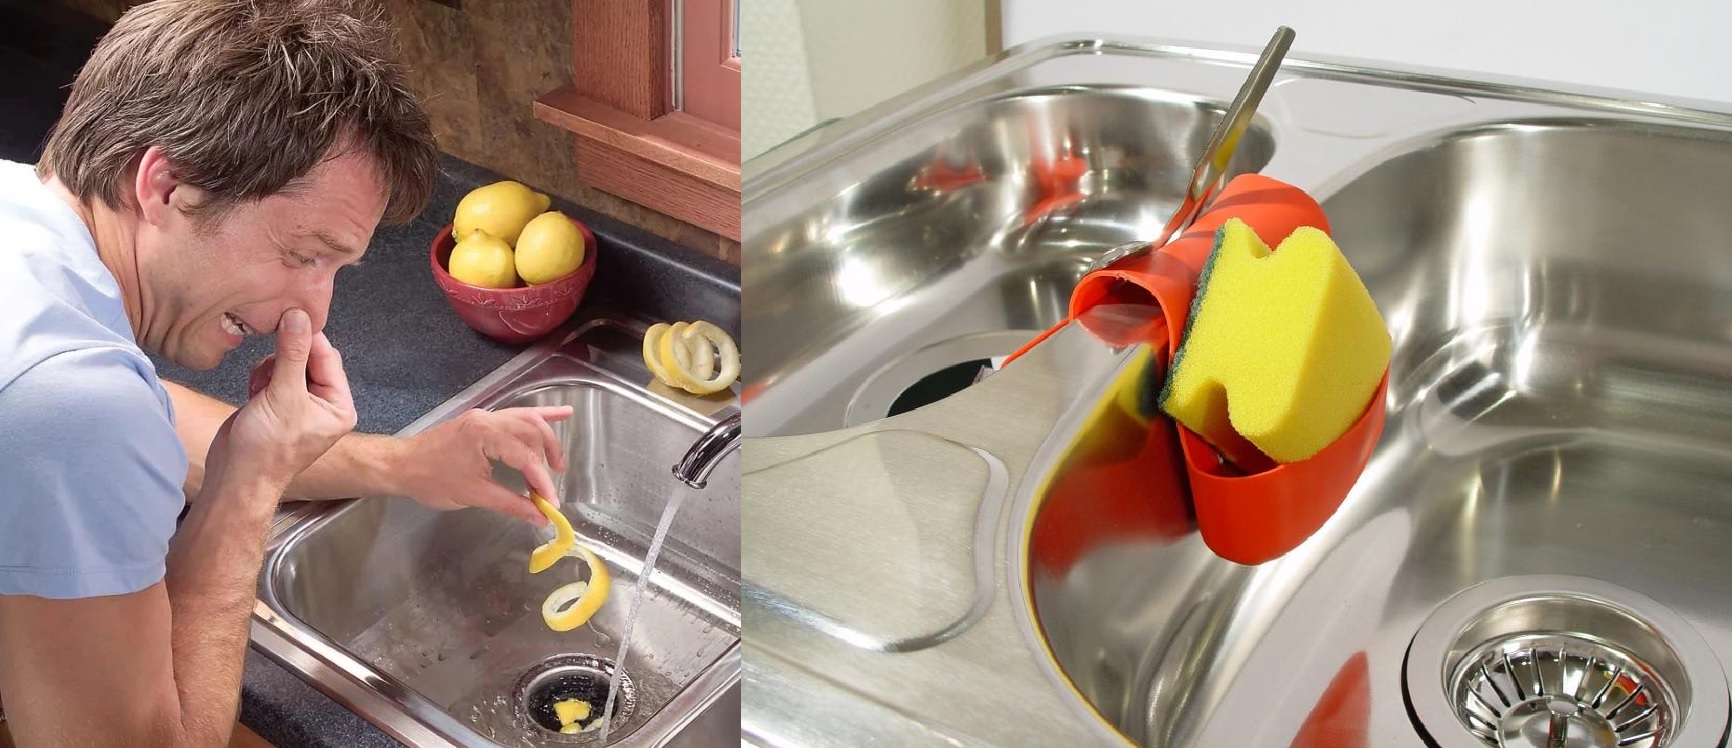 Как устранить запах из раковины на кухне в домашних условиях: самые эффективные методы, народные способы